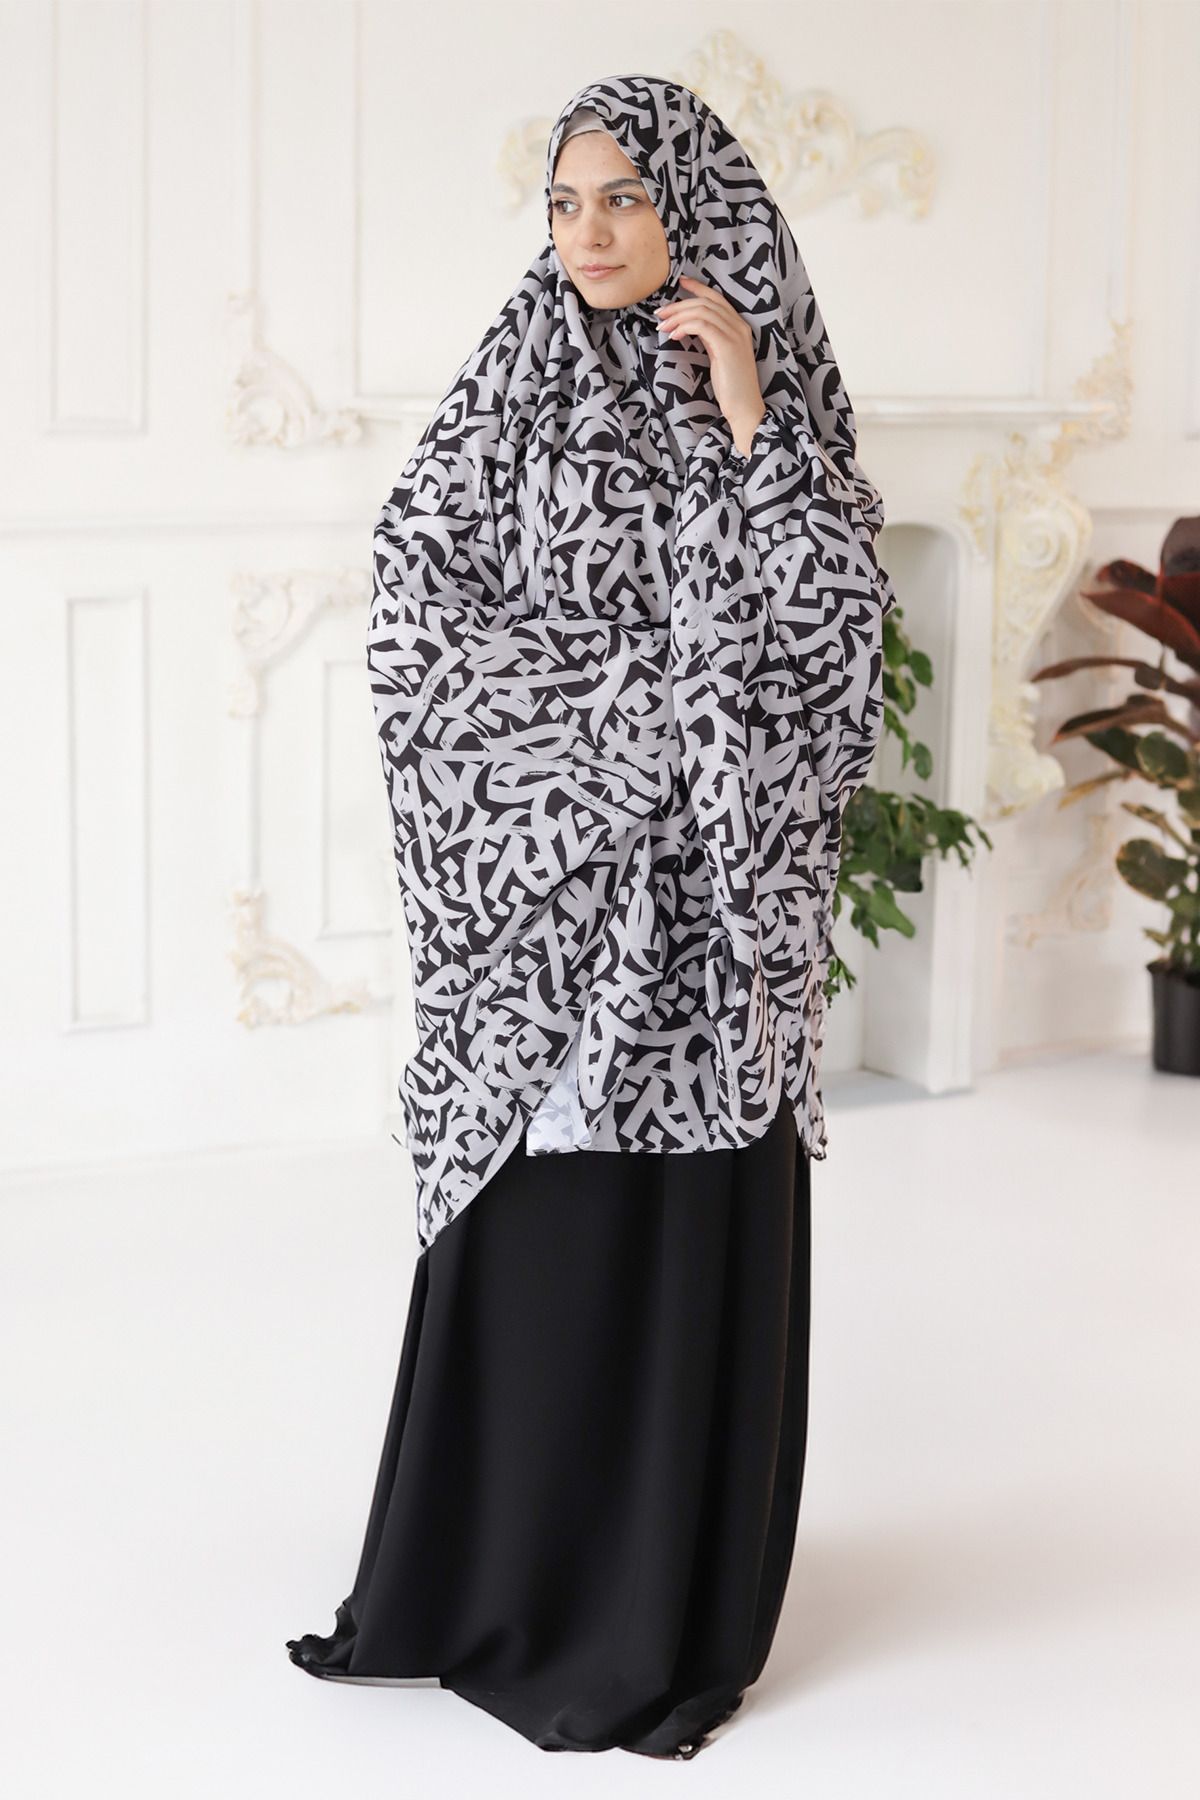 L'nour Nuqta - Tunik-etek Takım Siyah Namaz Elbisesi - Hac Ve Umre Kıyafetleri